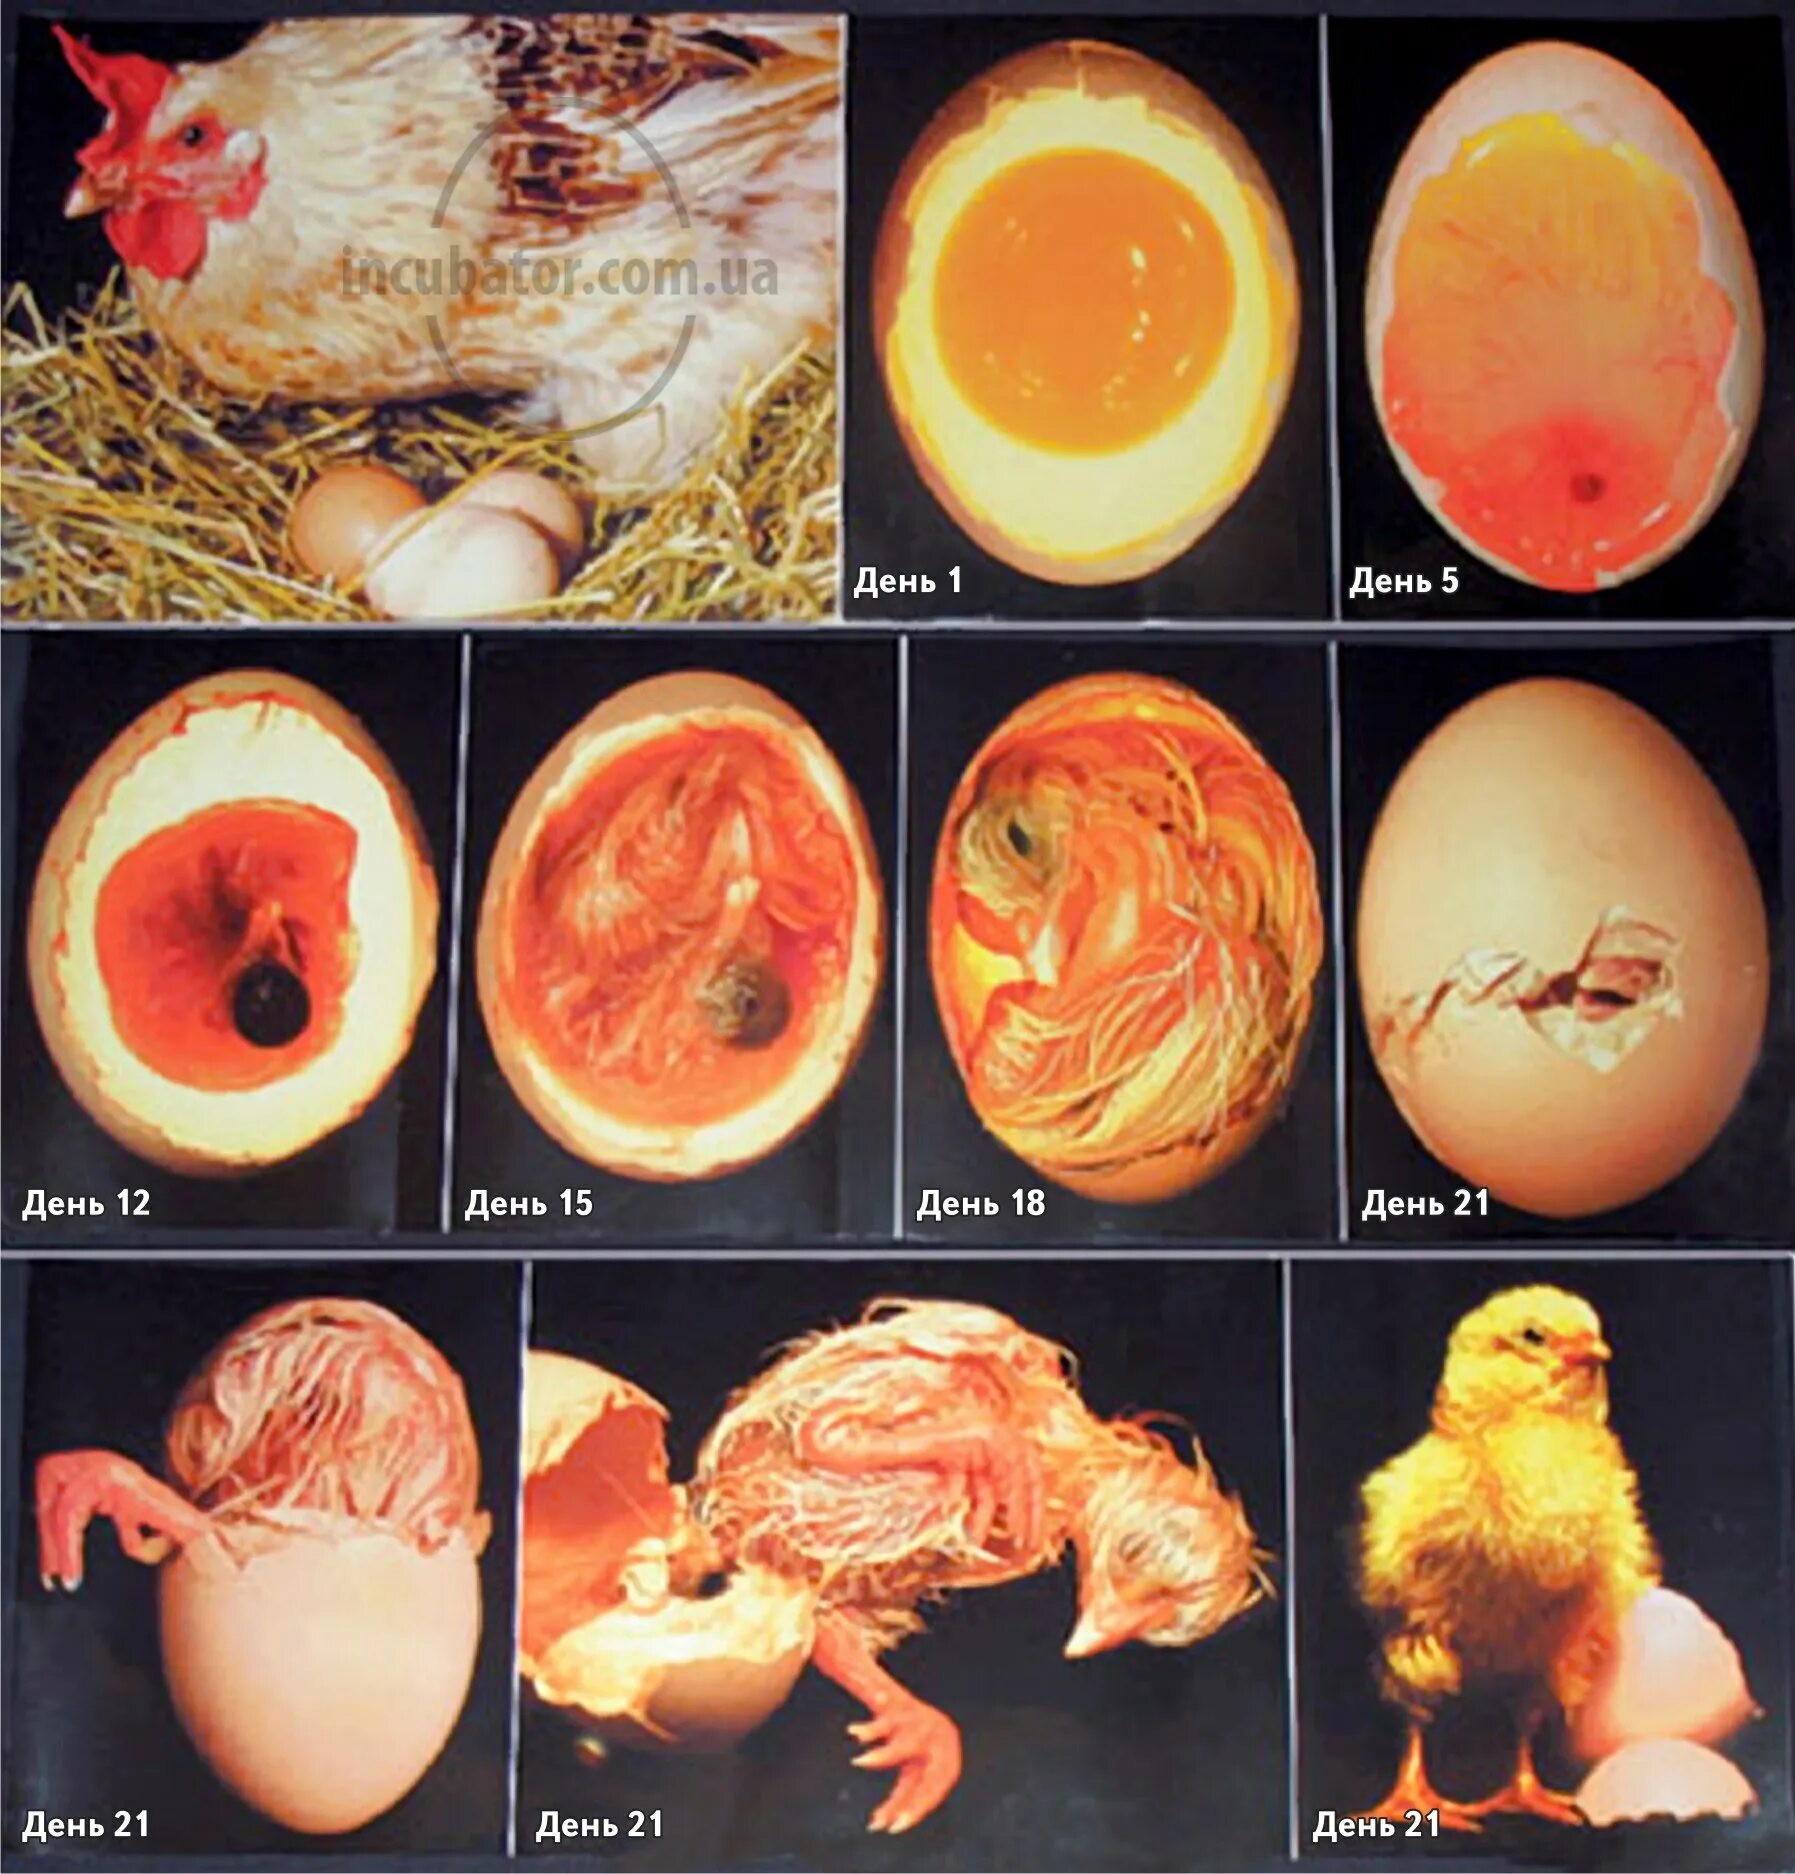 Стадия развития куриного инкубационного яйца. Овоскопирование утиных яиц. Яйцо индейки инкубационное овоскопирование. Инкубация утиных яиц овоскопирование. 1 неделя 2 яйца